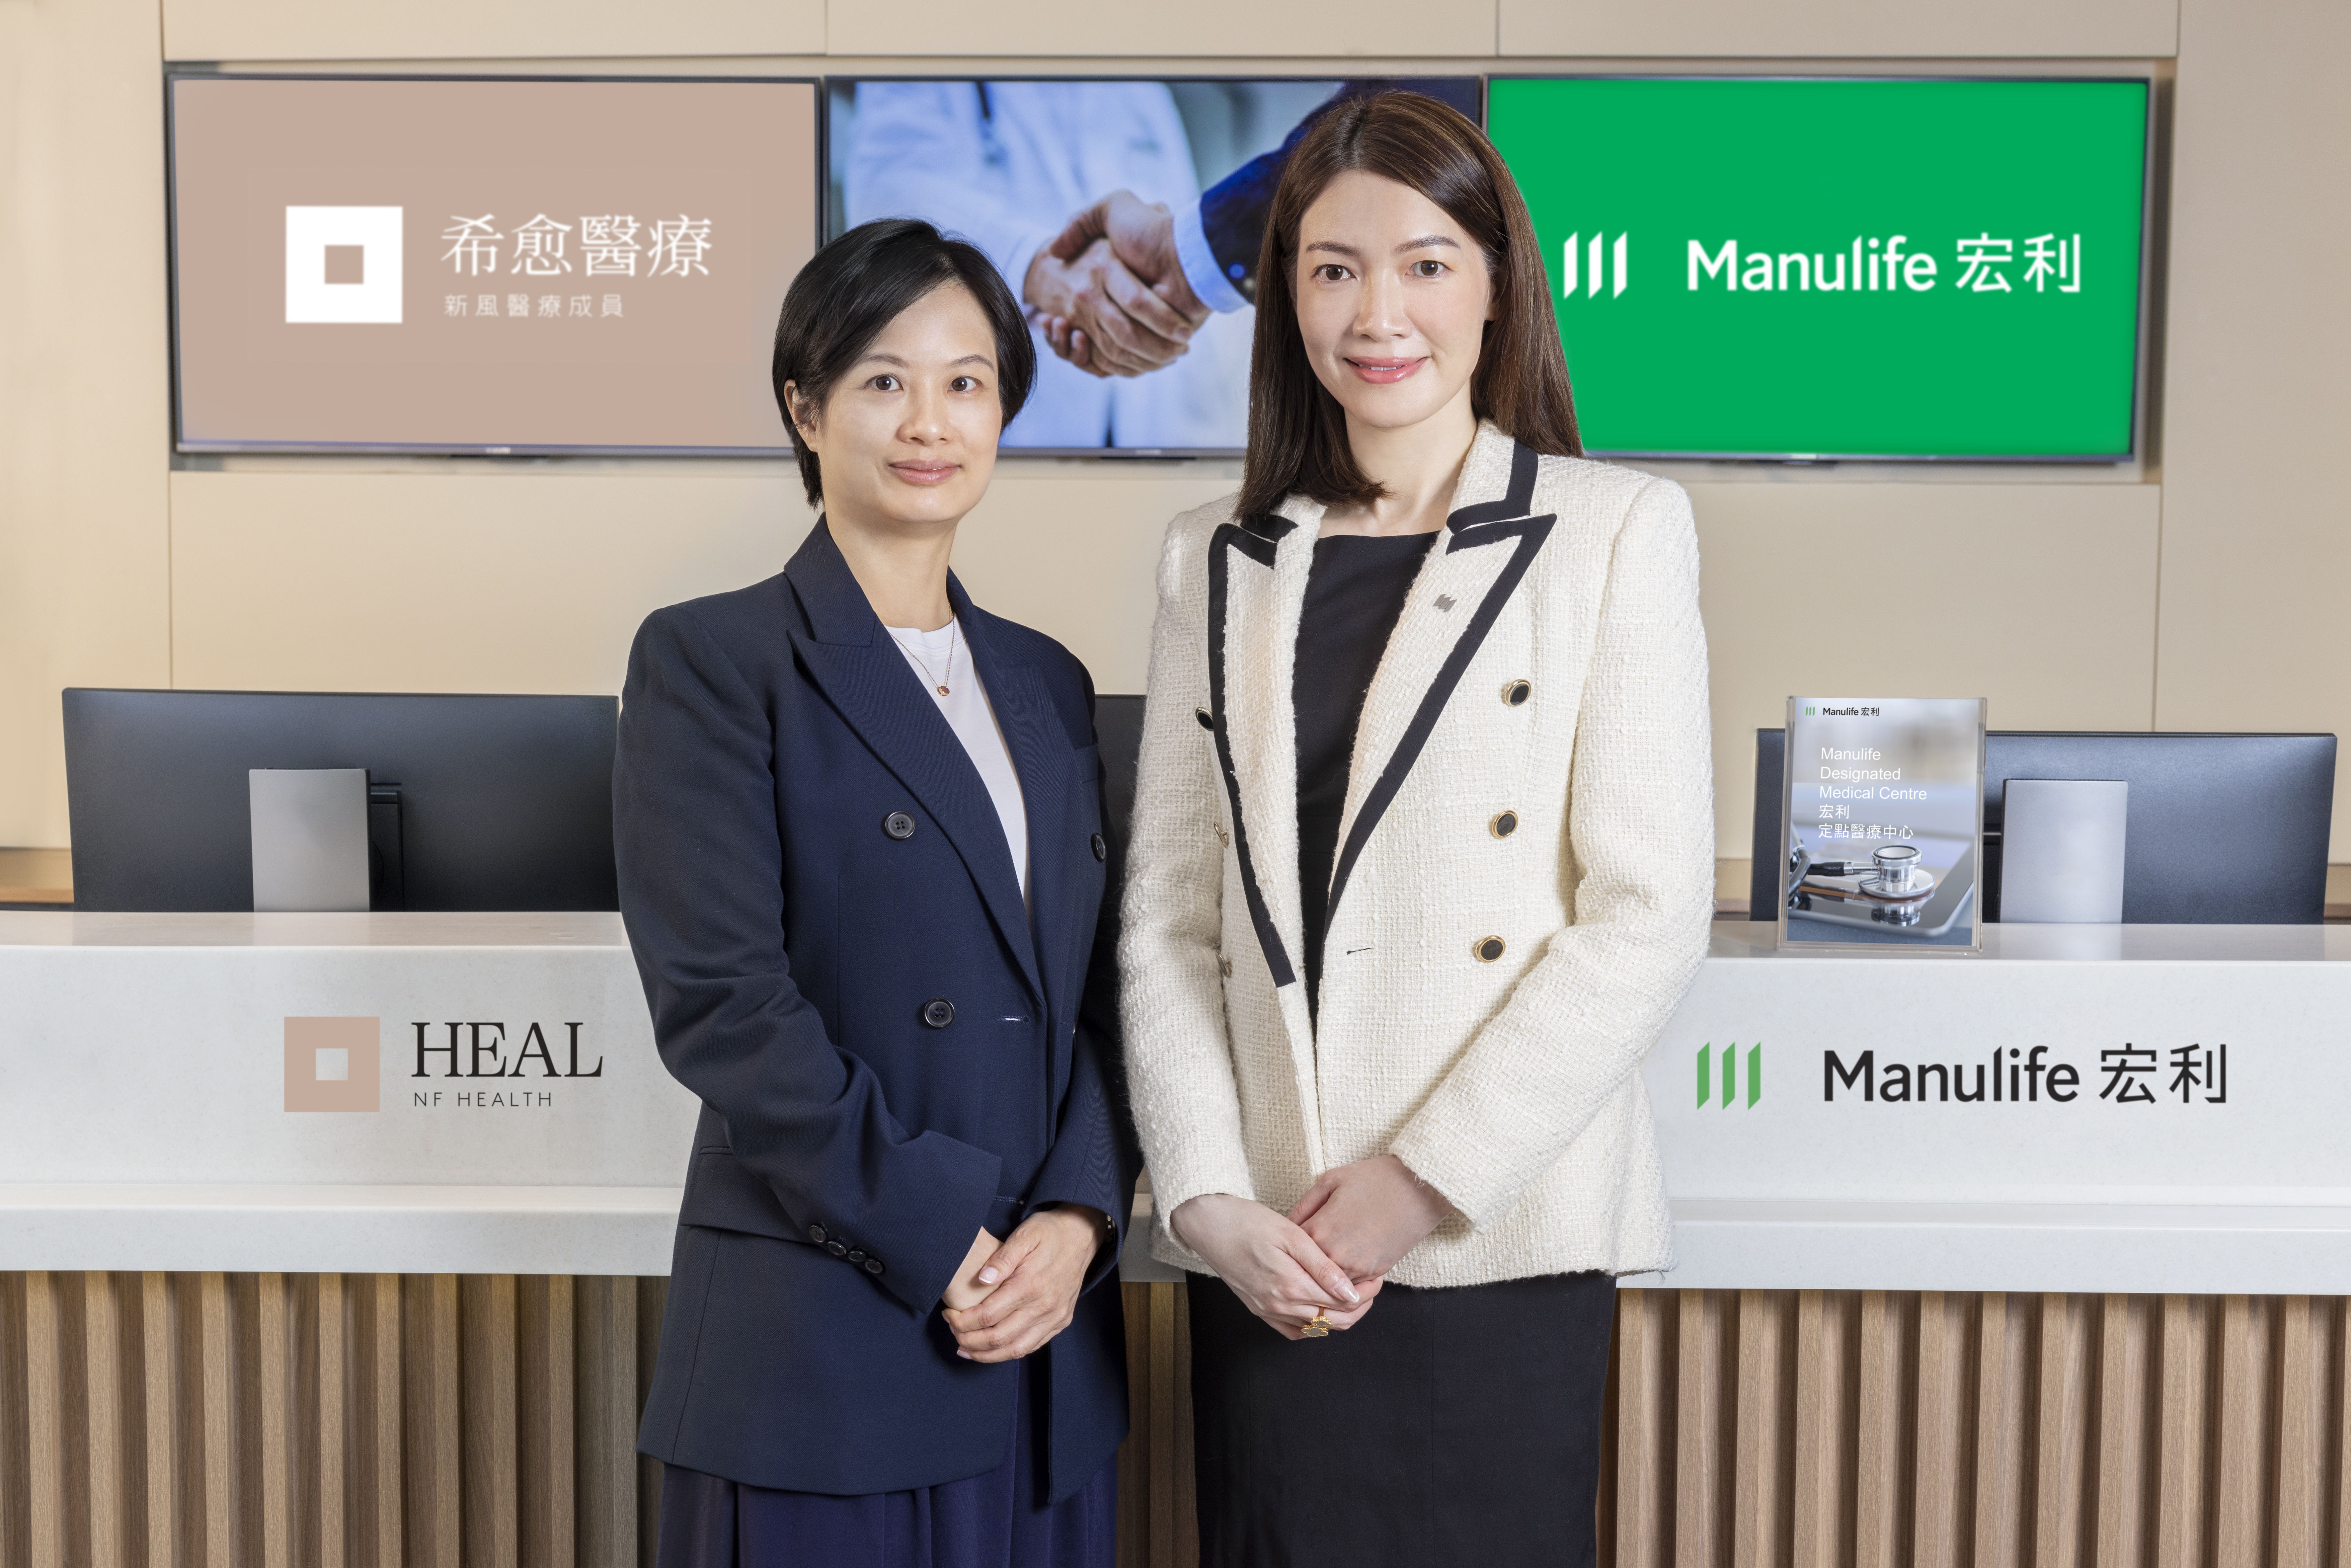 宏利香港携手希愈医疗 为客户提供优质医疗服务